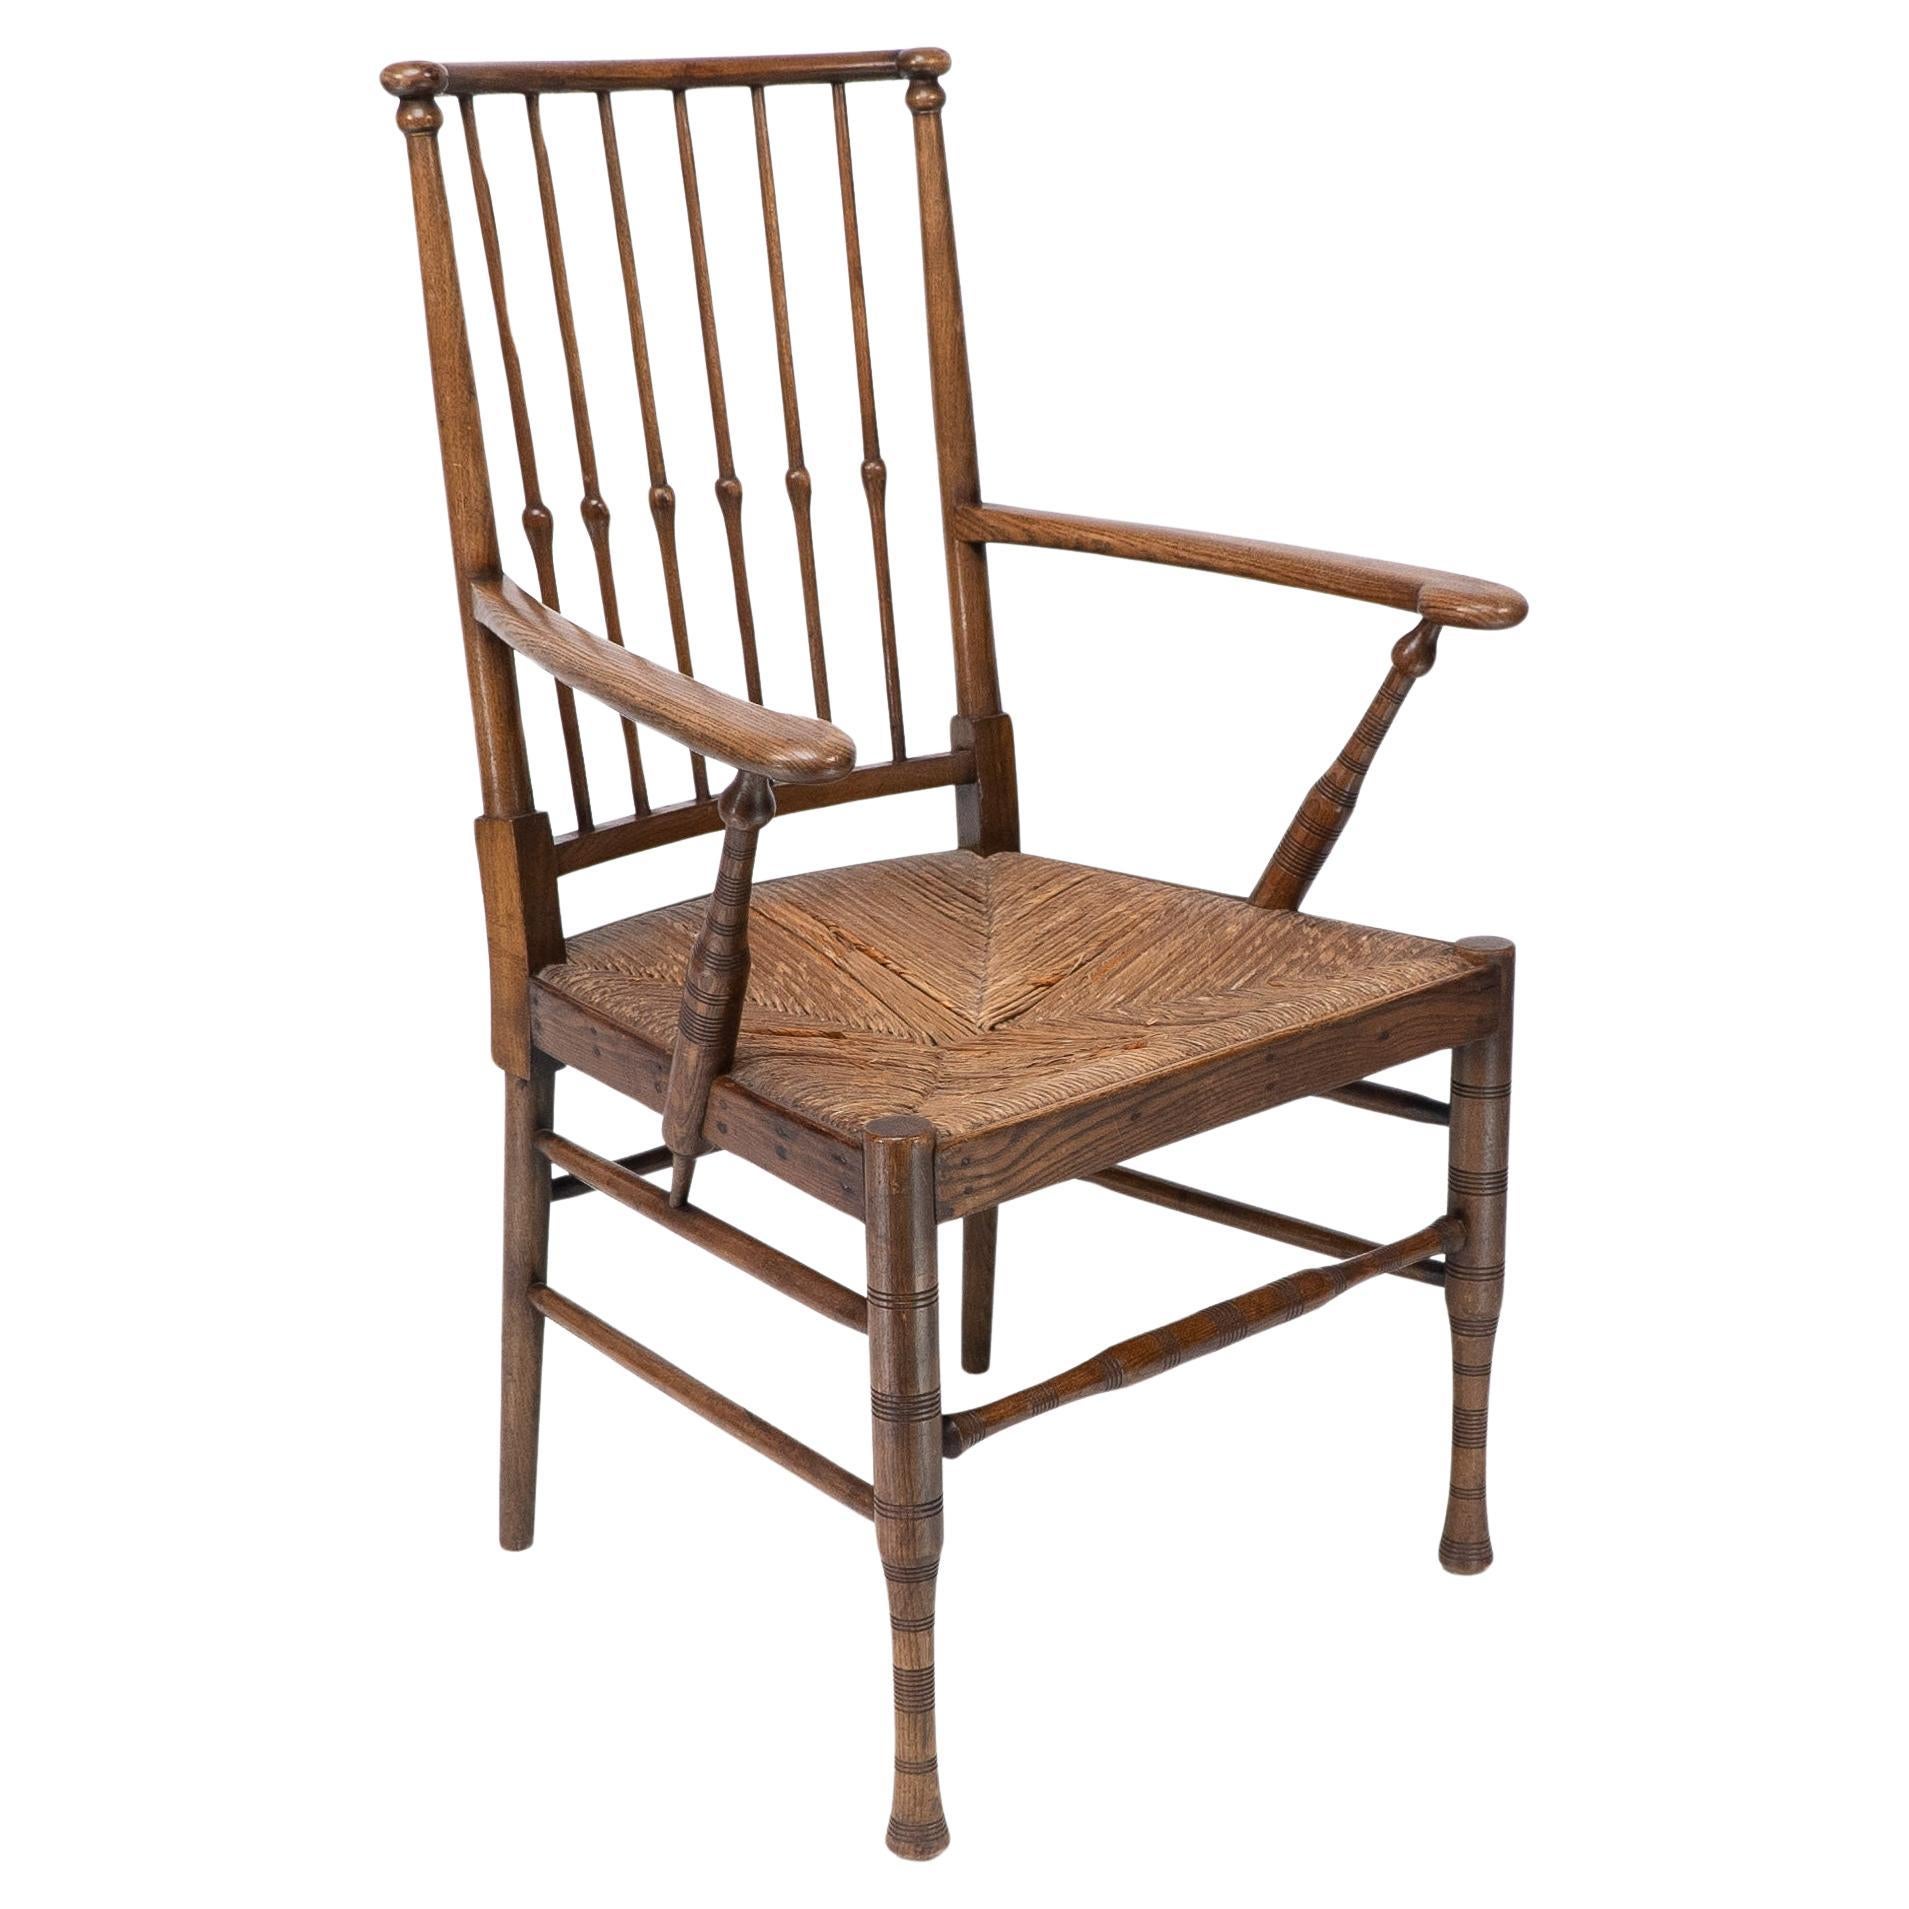 Deux fauteuils Thebes Rush de style égyptien Liberty & Co